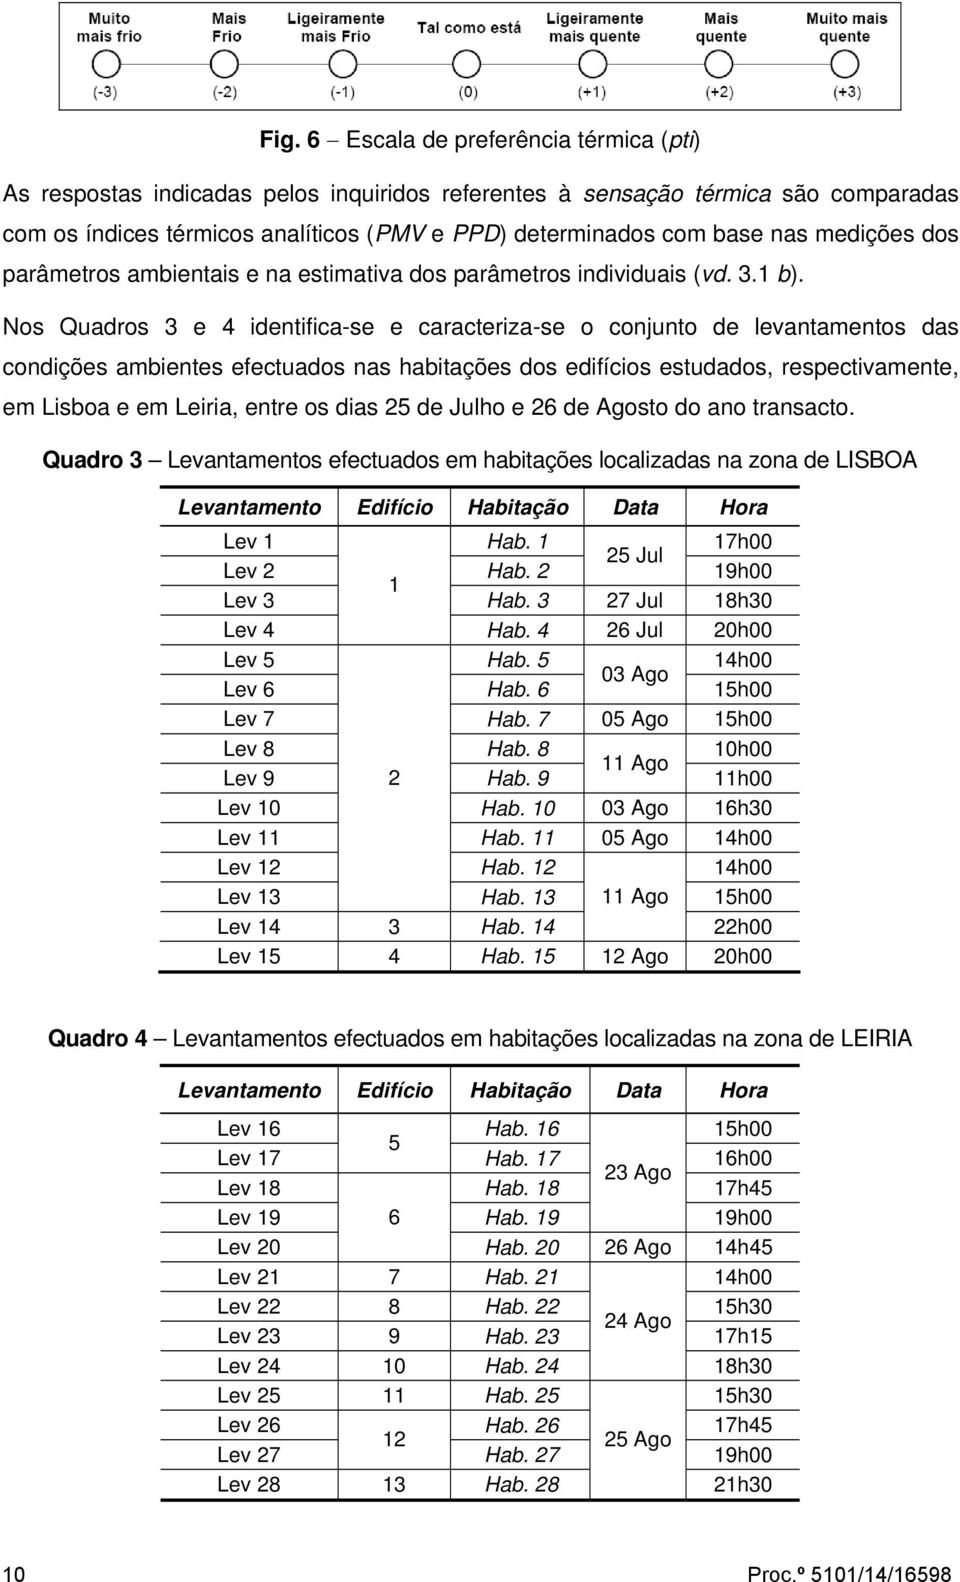 Nos Quadros 3 e 4 identifica-se e caracteriza-se o conjunto de levantamentos das condições ambientes efectuados nas habitações dos edifícios estudados, respectivamente, em Lisboa e em Leiria, entre